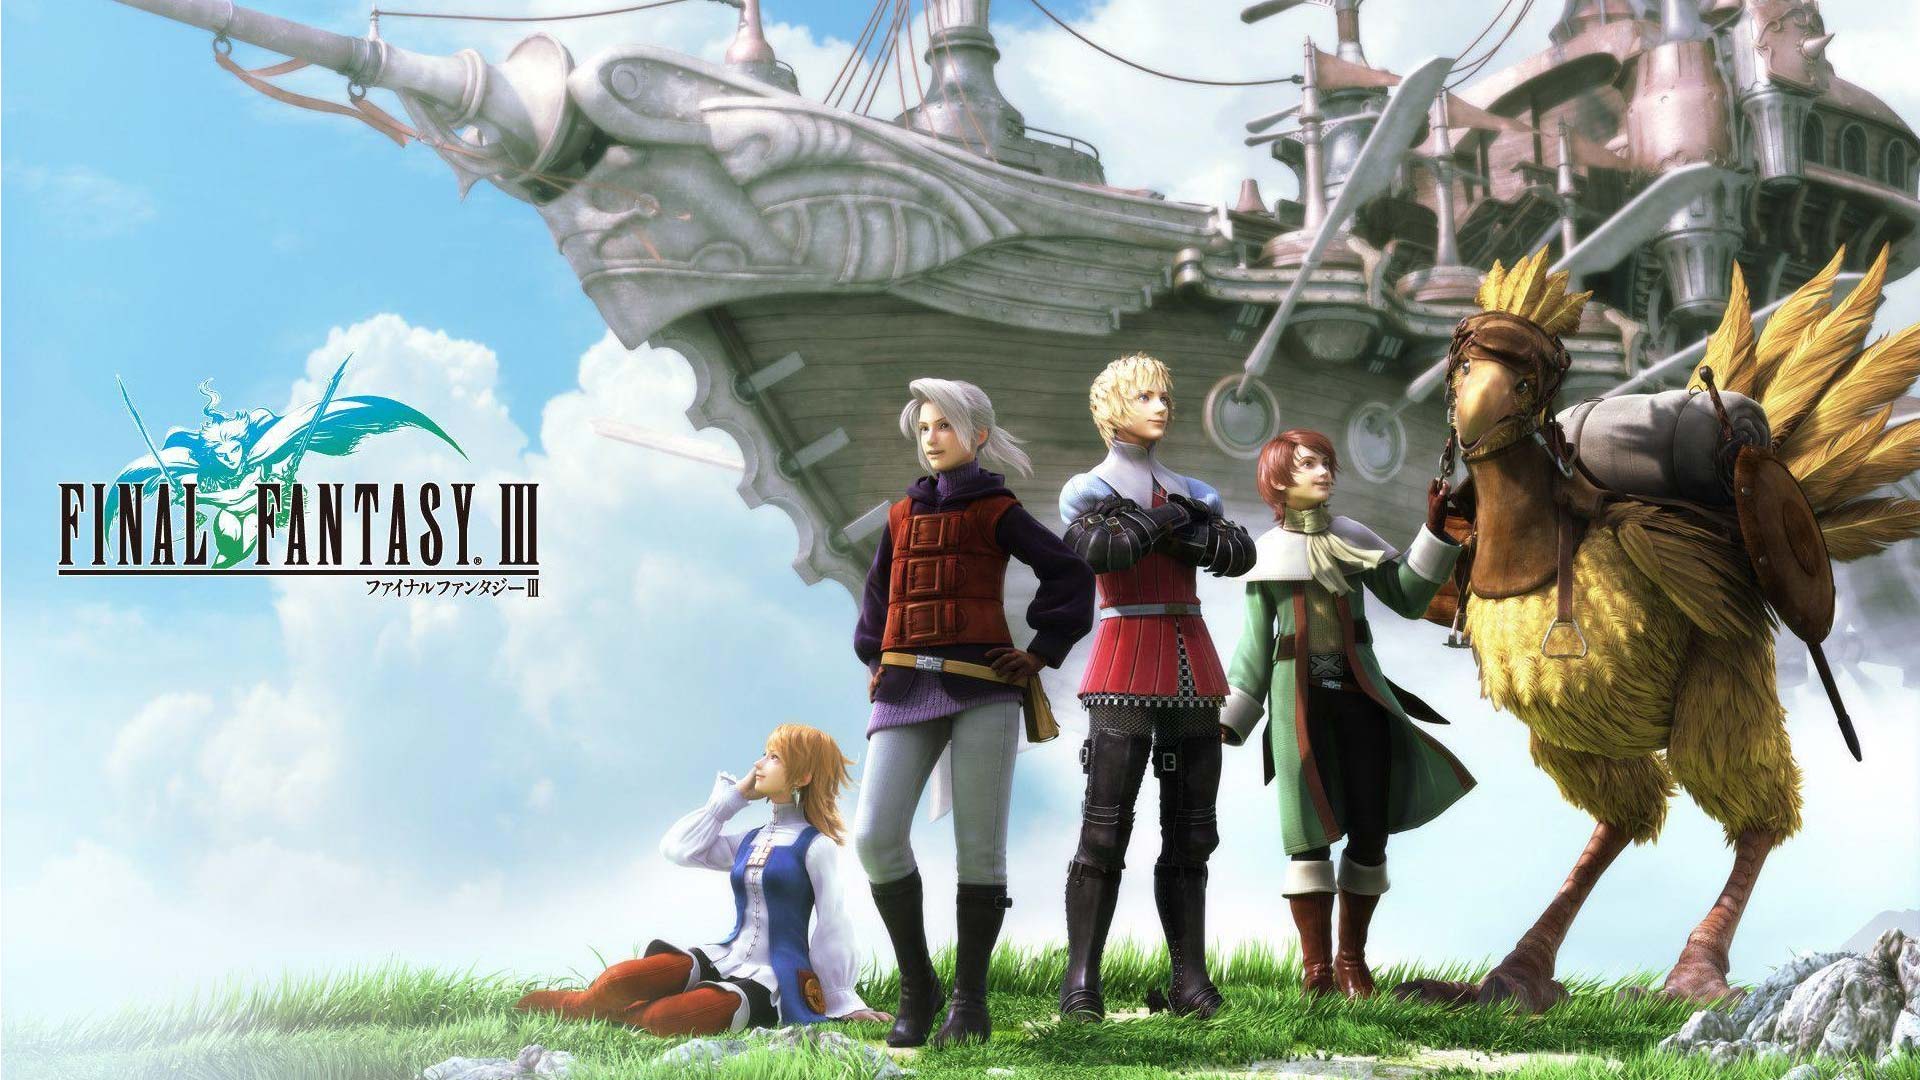 زمان مورد نیاز برای به اتمام رساندن هریک از نسخه های سری Final Fantasy